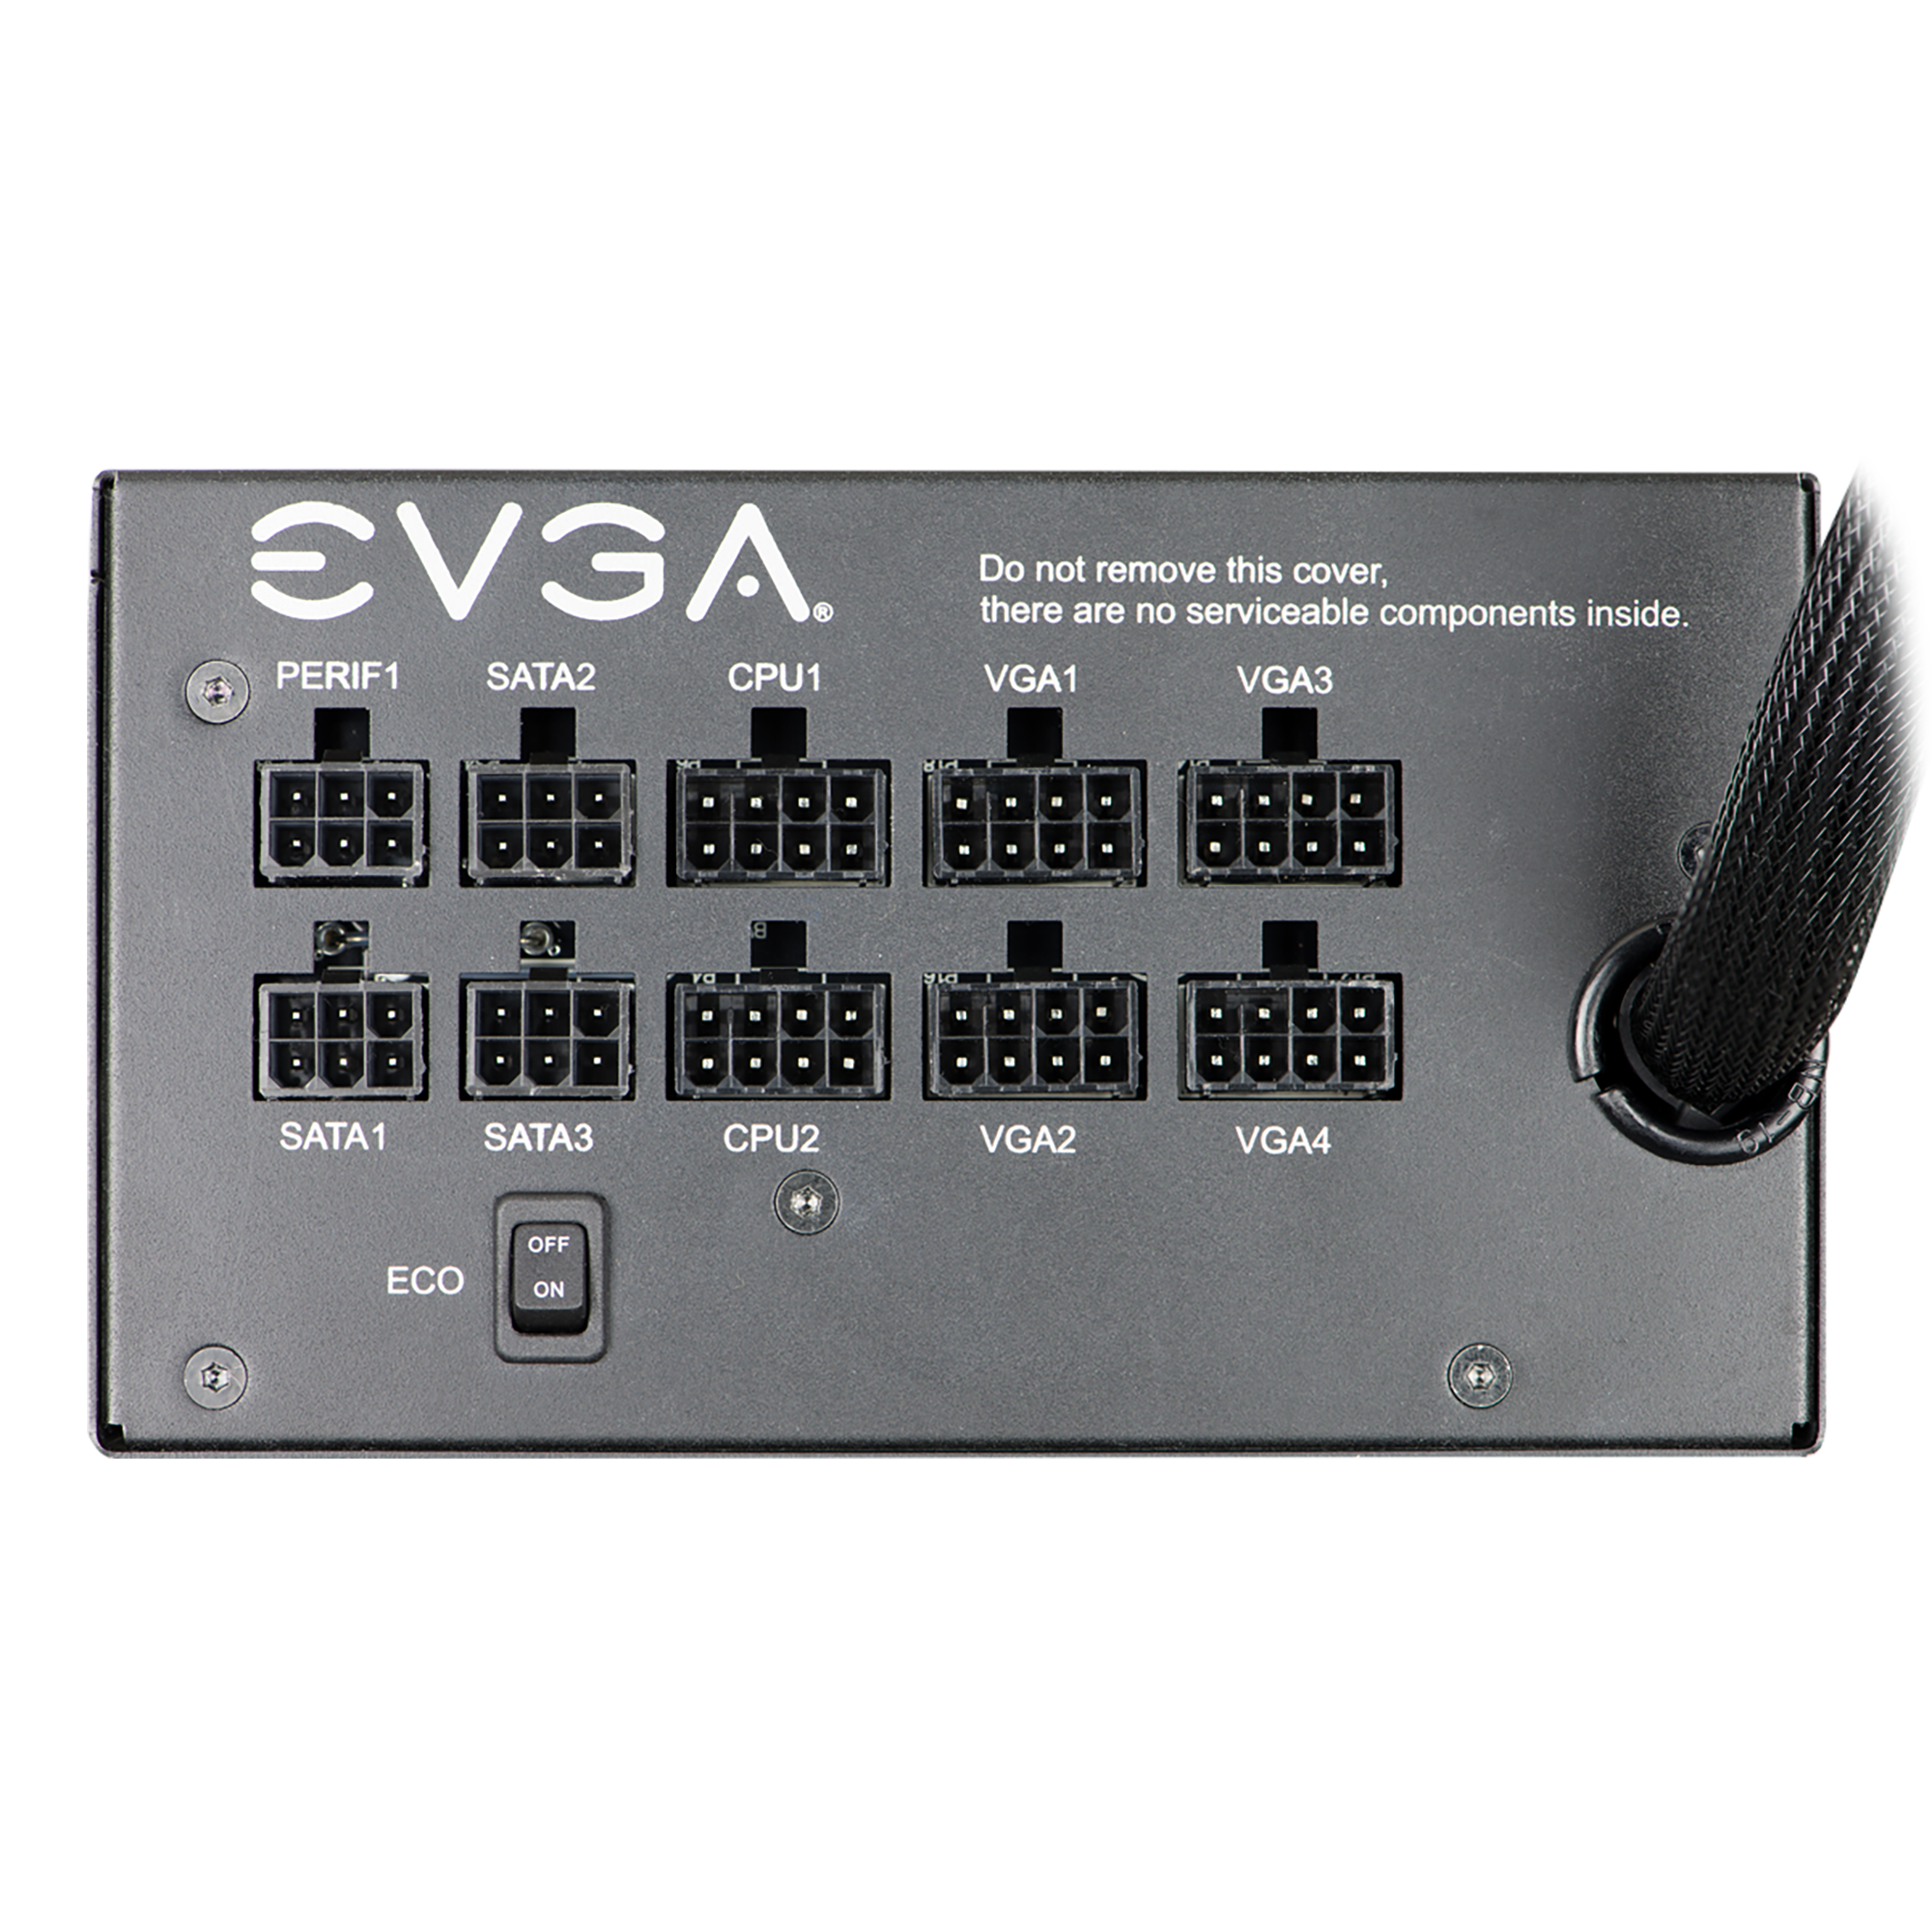 EVGA - Products - EVGA 850 GQ, 80+ GOLD 850W, Semi Modular, EVGA 